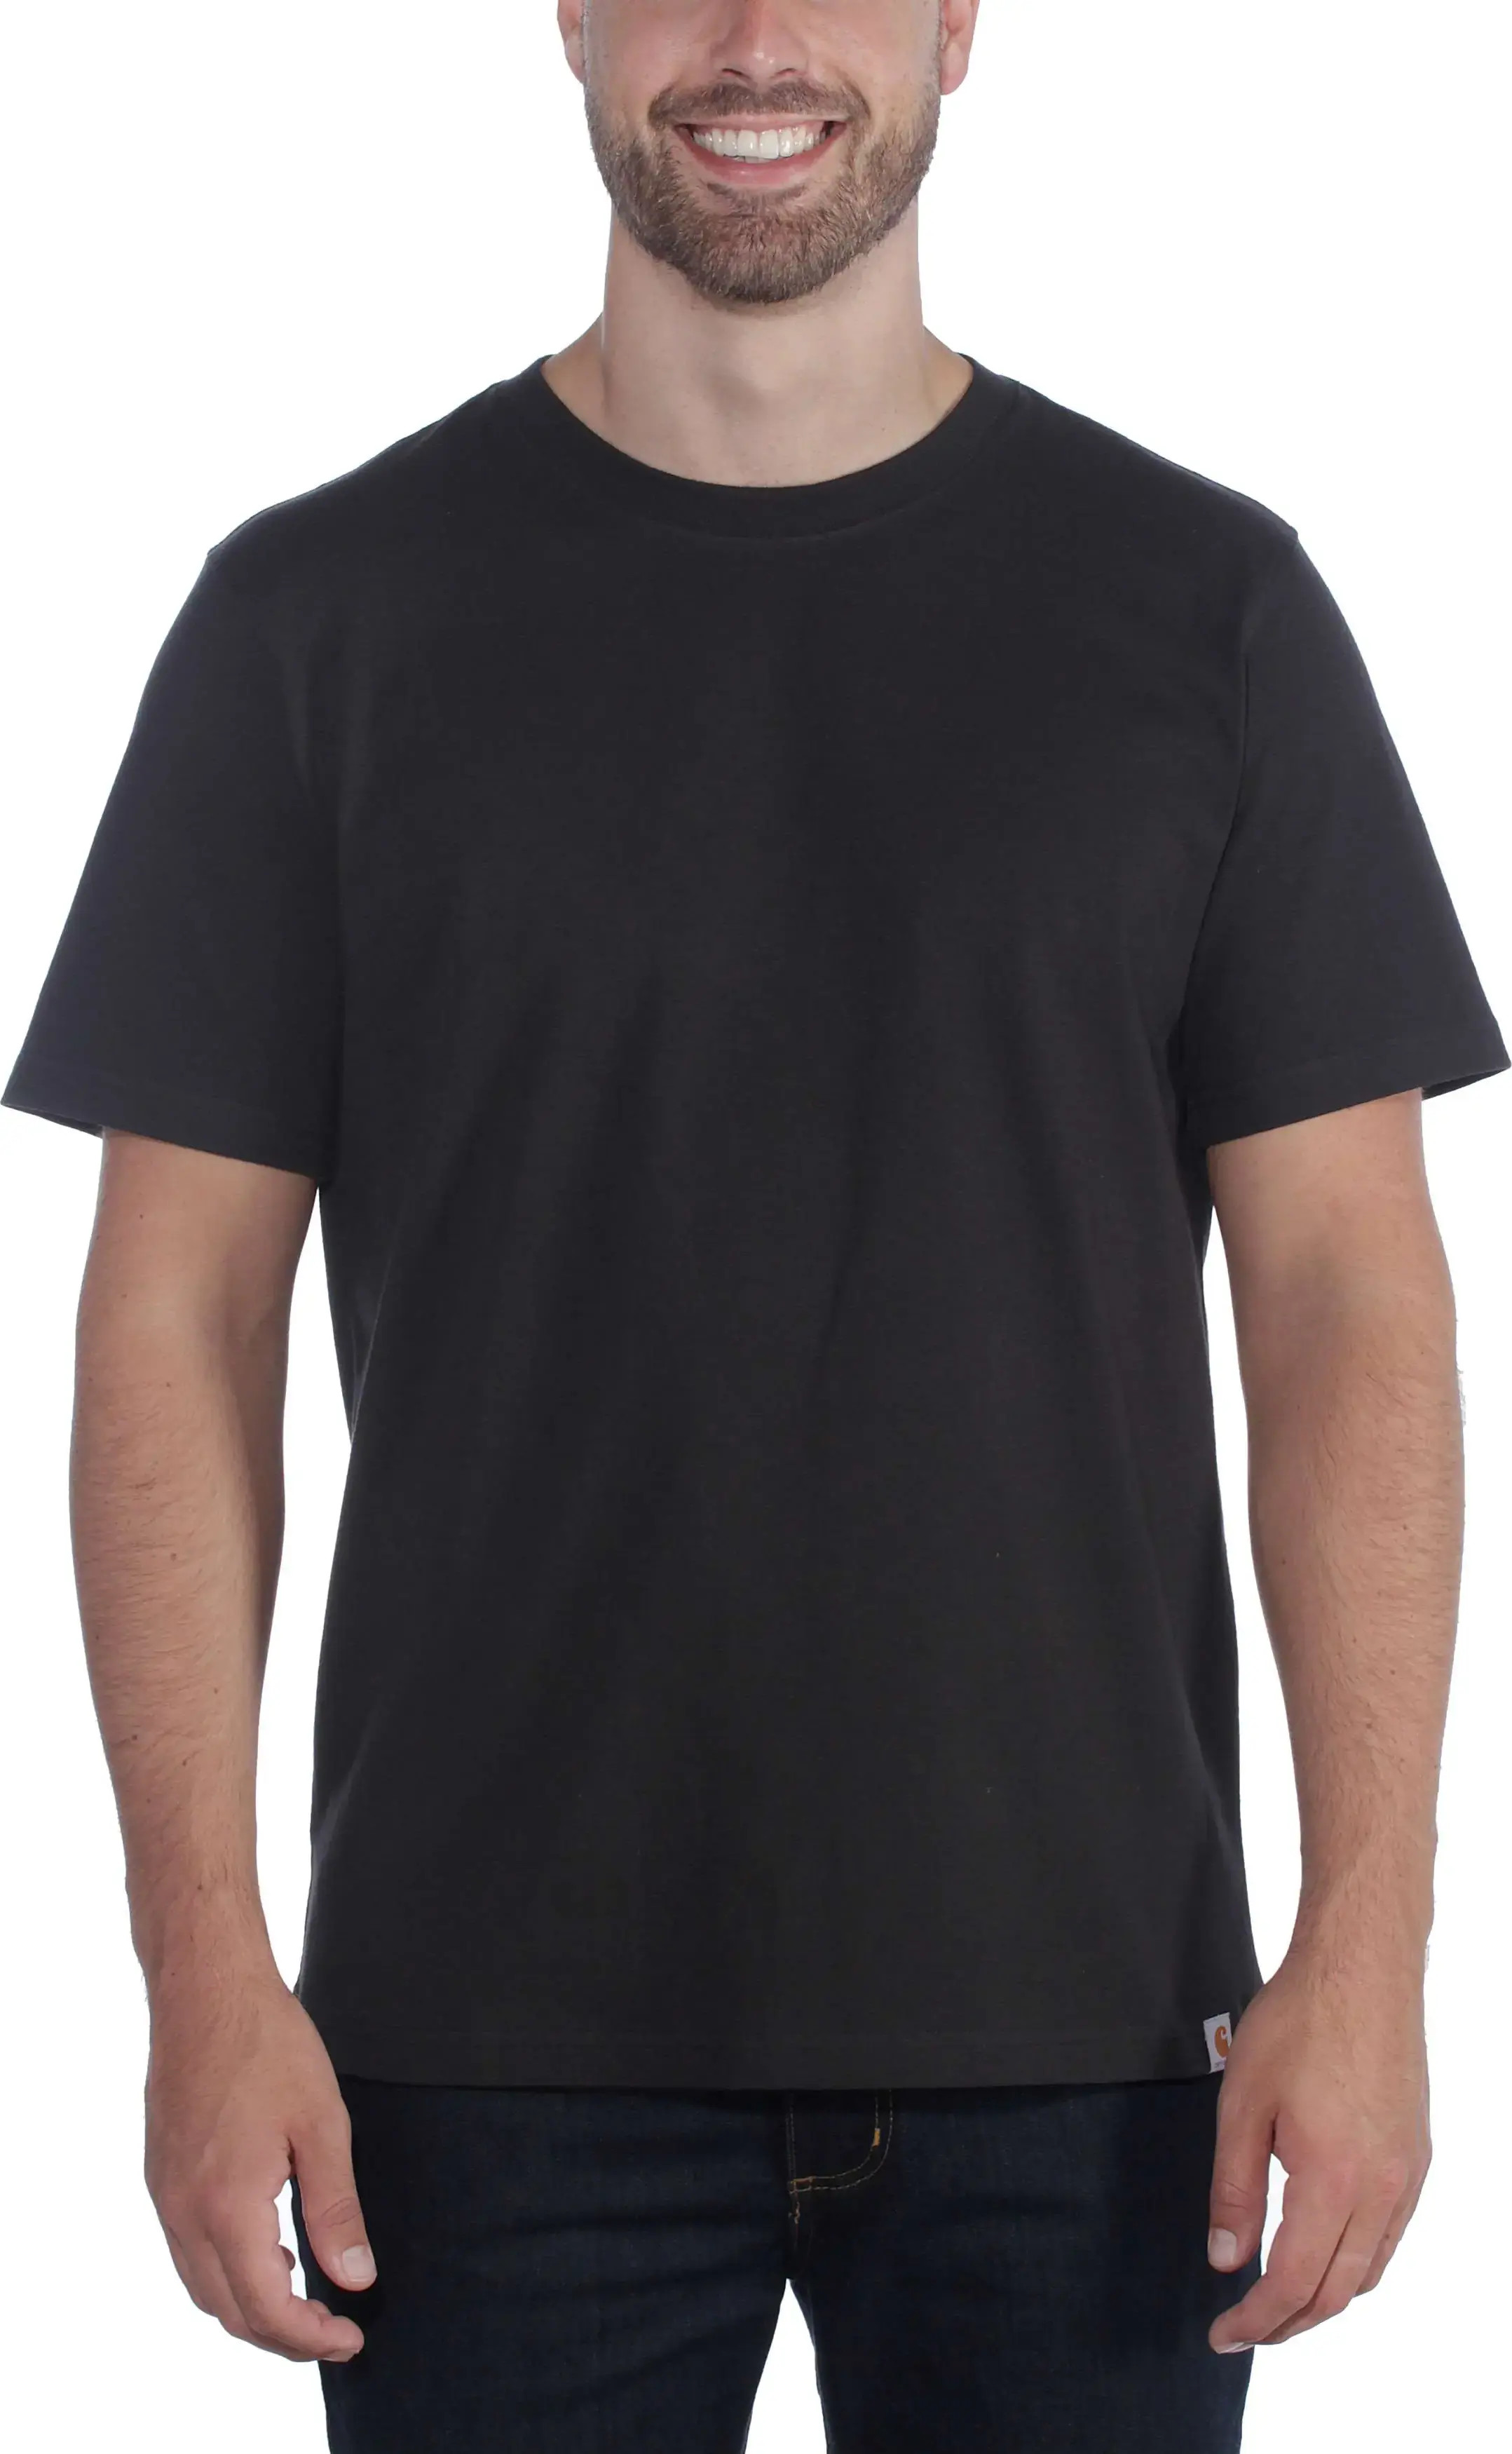 Men’s Relaxed Fit Heavyweight Short Sleeve T-Shirt Black